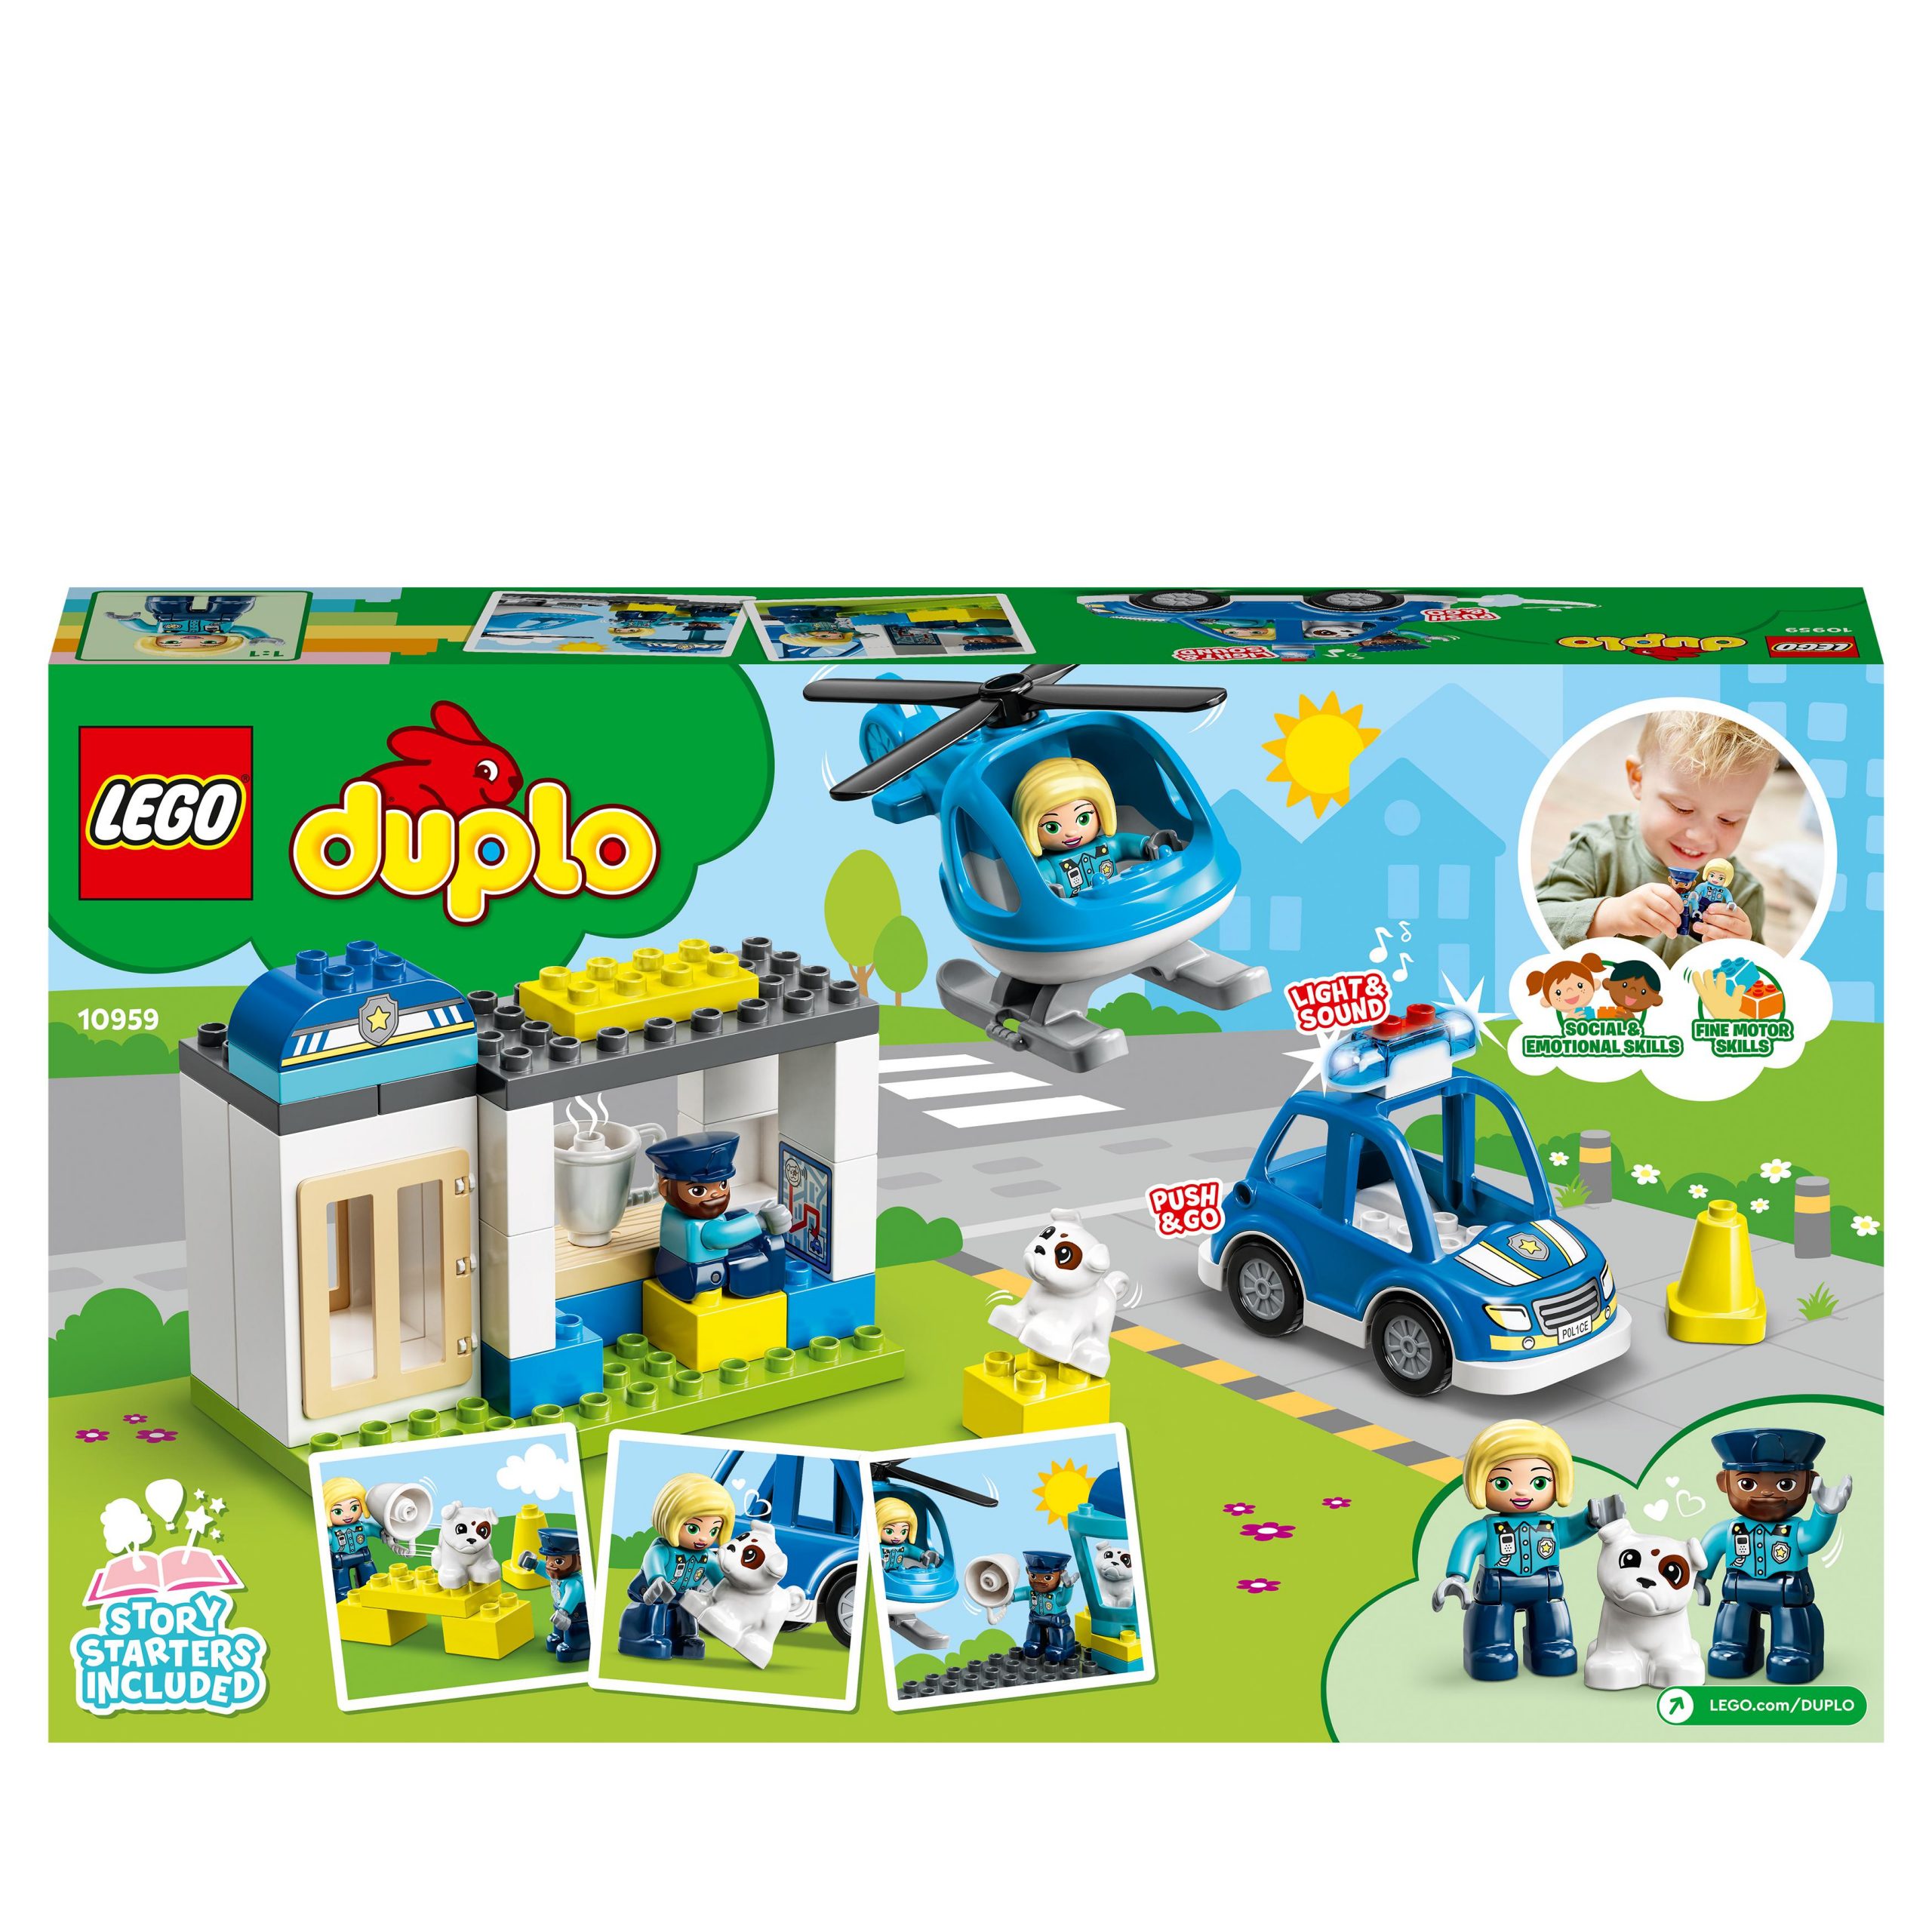 Lego duplo 10959 stazione di polizia ed elicottero, set per bambini di 2+ anni, macchina giocattolo con luci e sirene - LEGO DUPLO, Lego